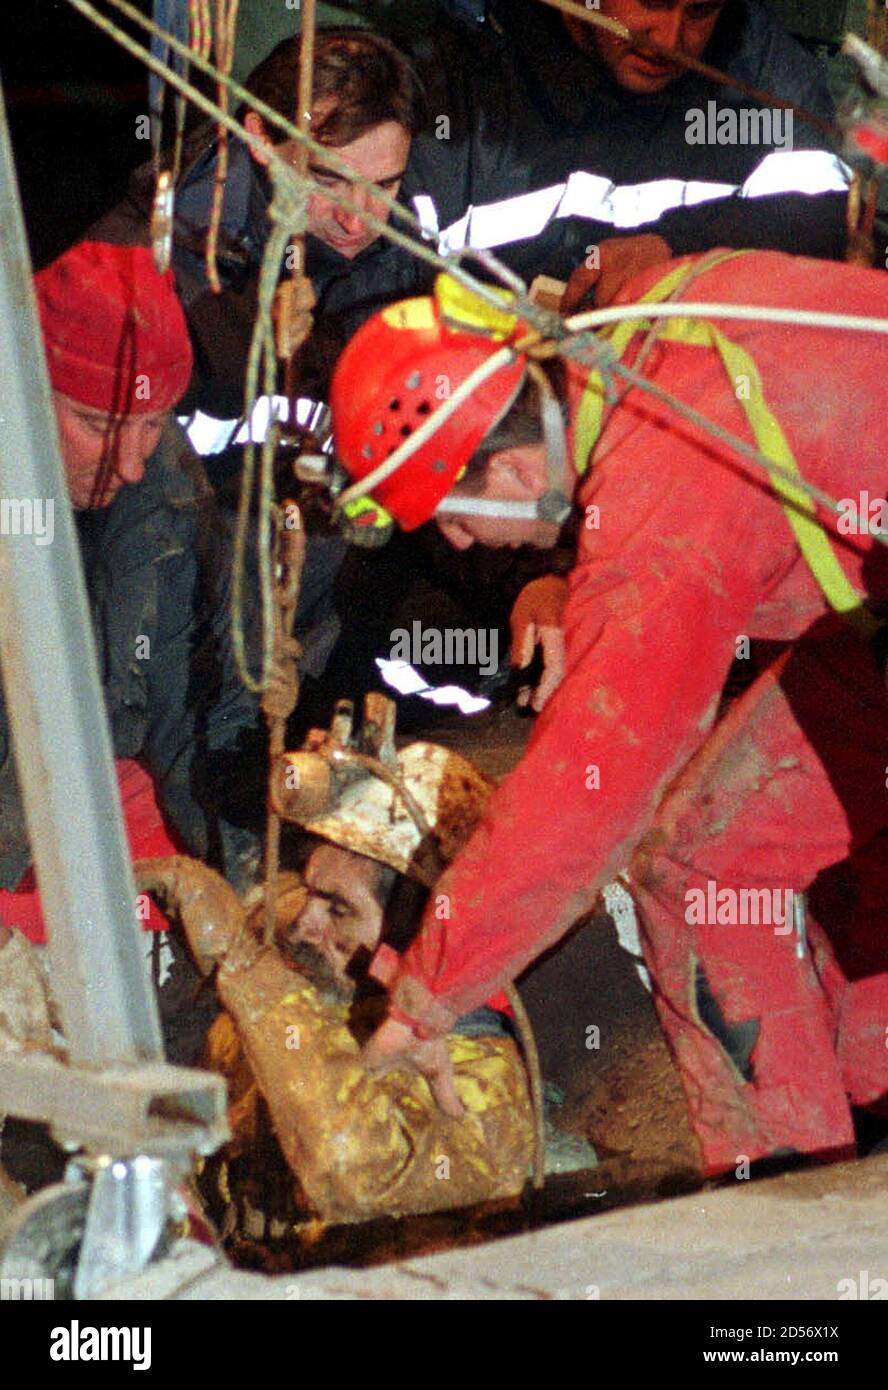 Yvon Cazal uno de los siete cavadores bloqueados por el agua cerca de Gramat en el suroeste de Francia, es izado a la seguridad a través de un taladro artificial por los rescatadores a finales de noviembre de 21. Los espeleólogos fueron rescatados después de 10 días atrapados en una caverna subterránea. JD/ Foto de stock